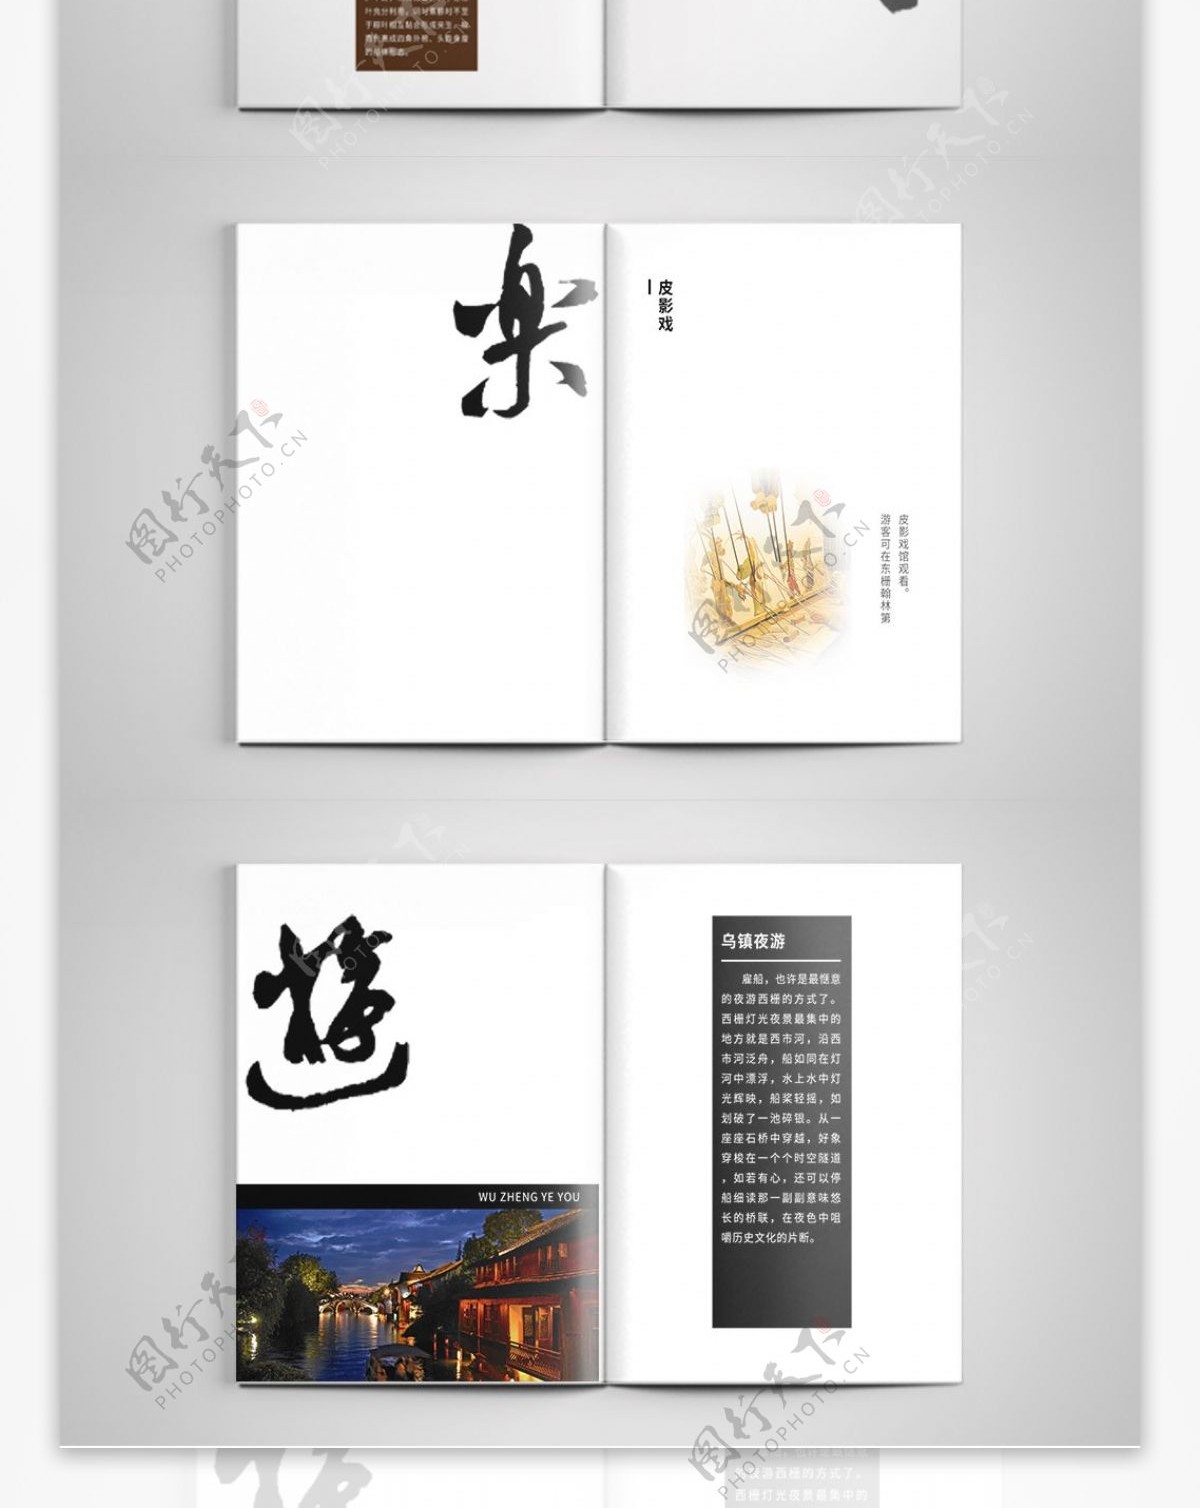 乌镇景点旅游简约黑白中国风宣传画册